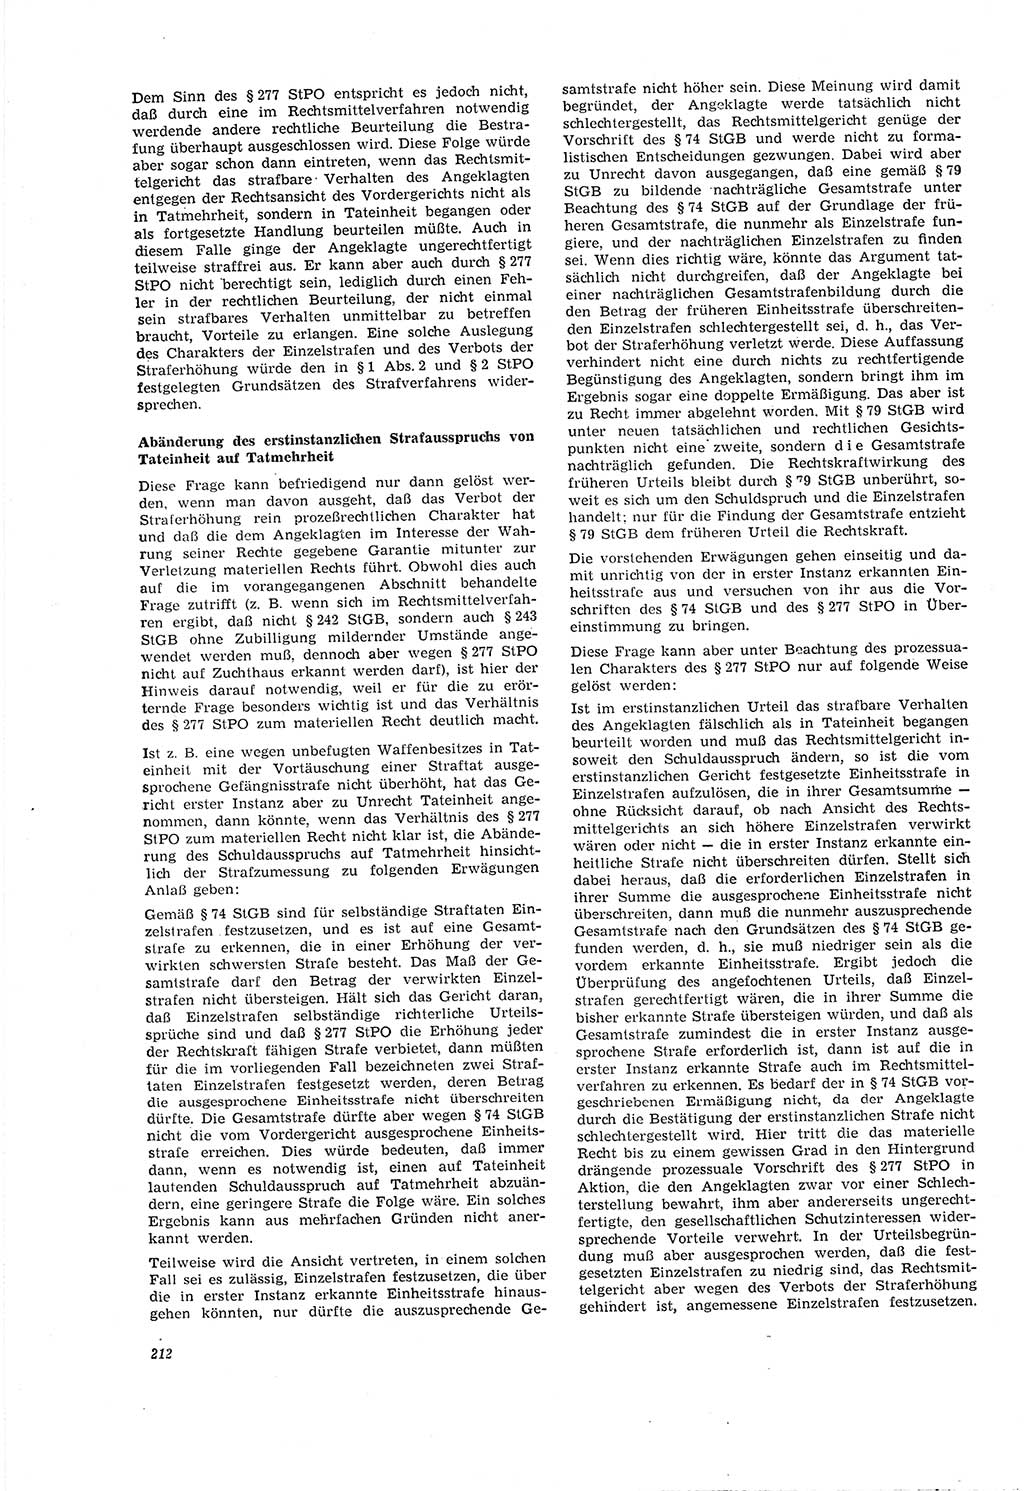 Neue Justiz (NJ), Zeitschrift für Recht und Rechtswissenschaft [Deutsche Demokratische Republik (DDR)], 20. Jahrgang 1966, Seite 212 (NJ DDR 1966, S. 212)